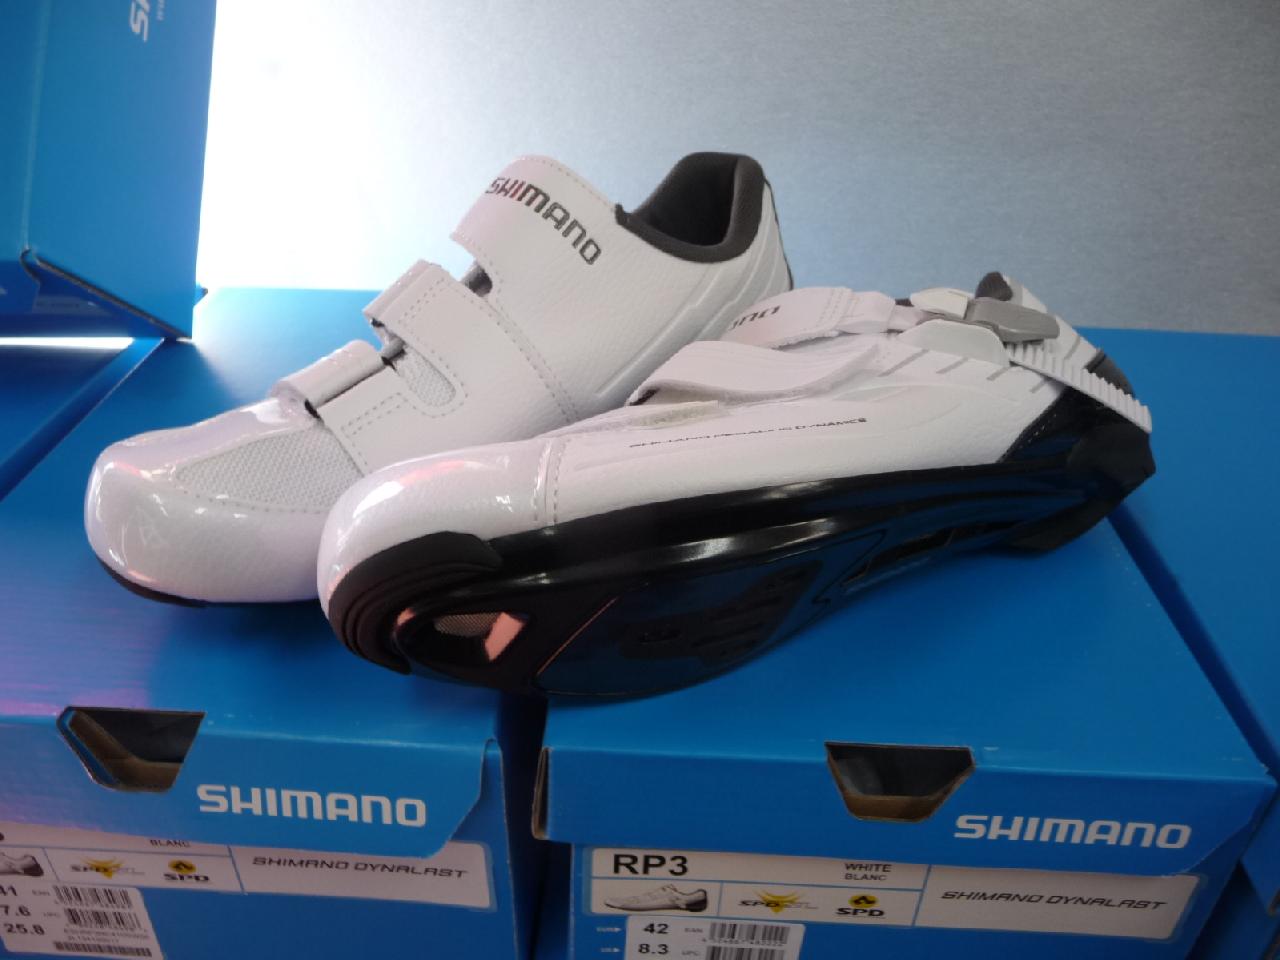 SHIMANO SH-RP300 MWE/ シマノ RP3 ワイド 【ホワイト】各サイズ即納在庫ございます。 サイクルスポーツ用品 増谷自転車